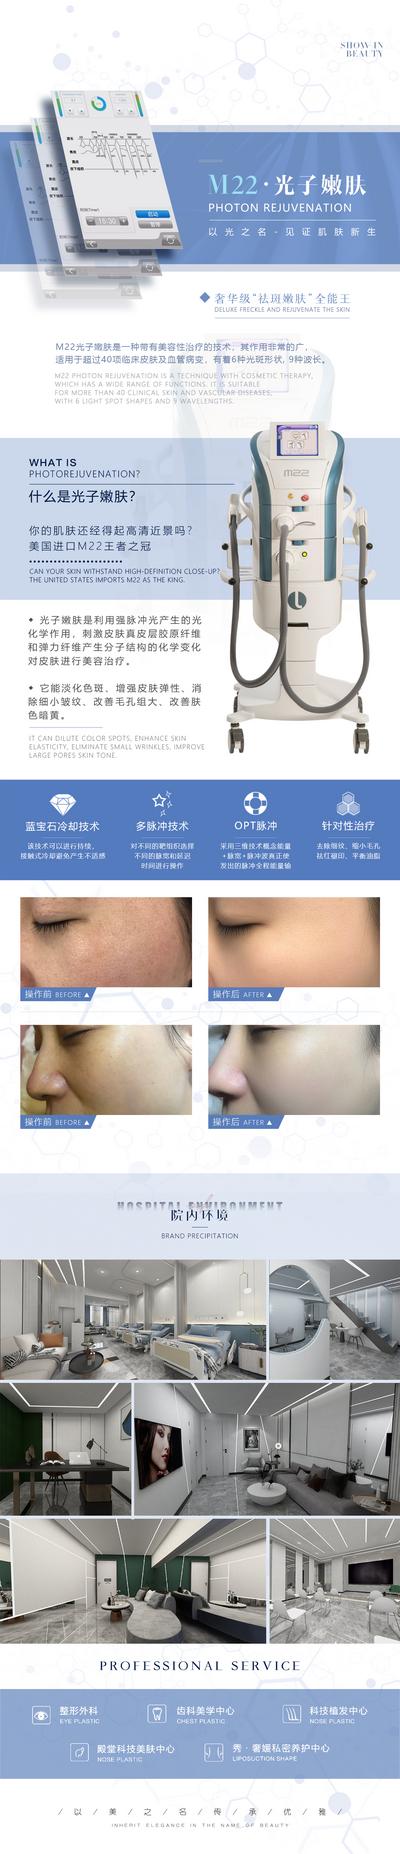 【南门网】广告 海报 医美 仪器 m22 光子嫩肤 设备 长图 专题